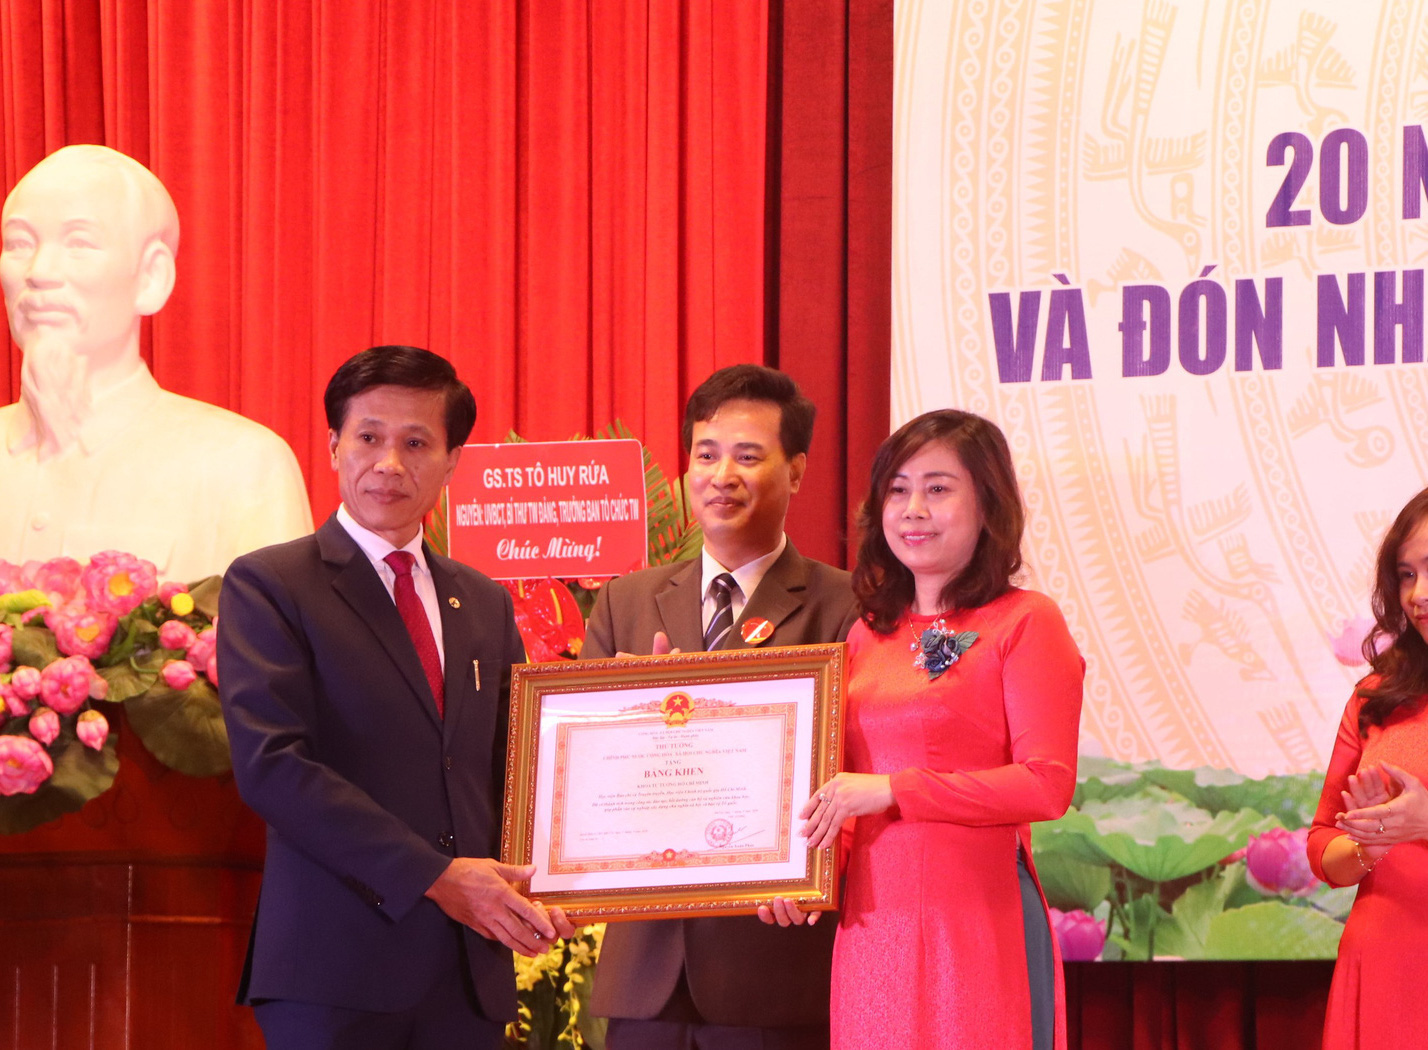 Khoa Tư tưởng Hồ Chí Minh, Học viện Báo chí và Tuyên truyền kỷ niệm 20 năm thành lập, đón nhận Bằng khen của Thủ tướng Chính phủ